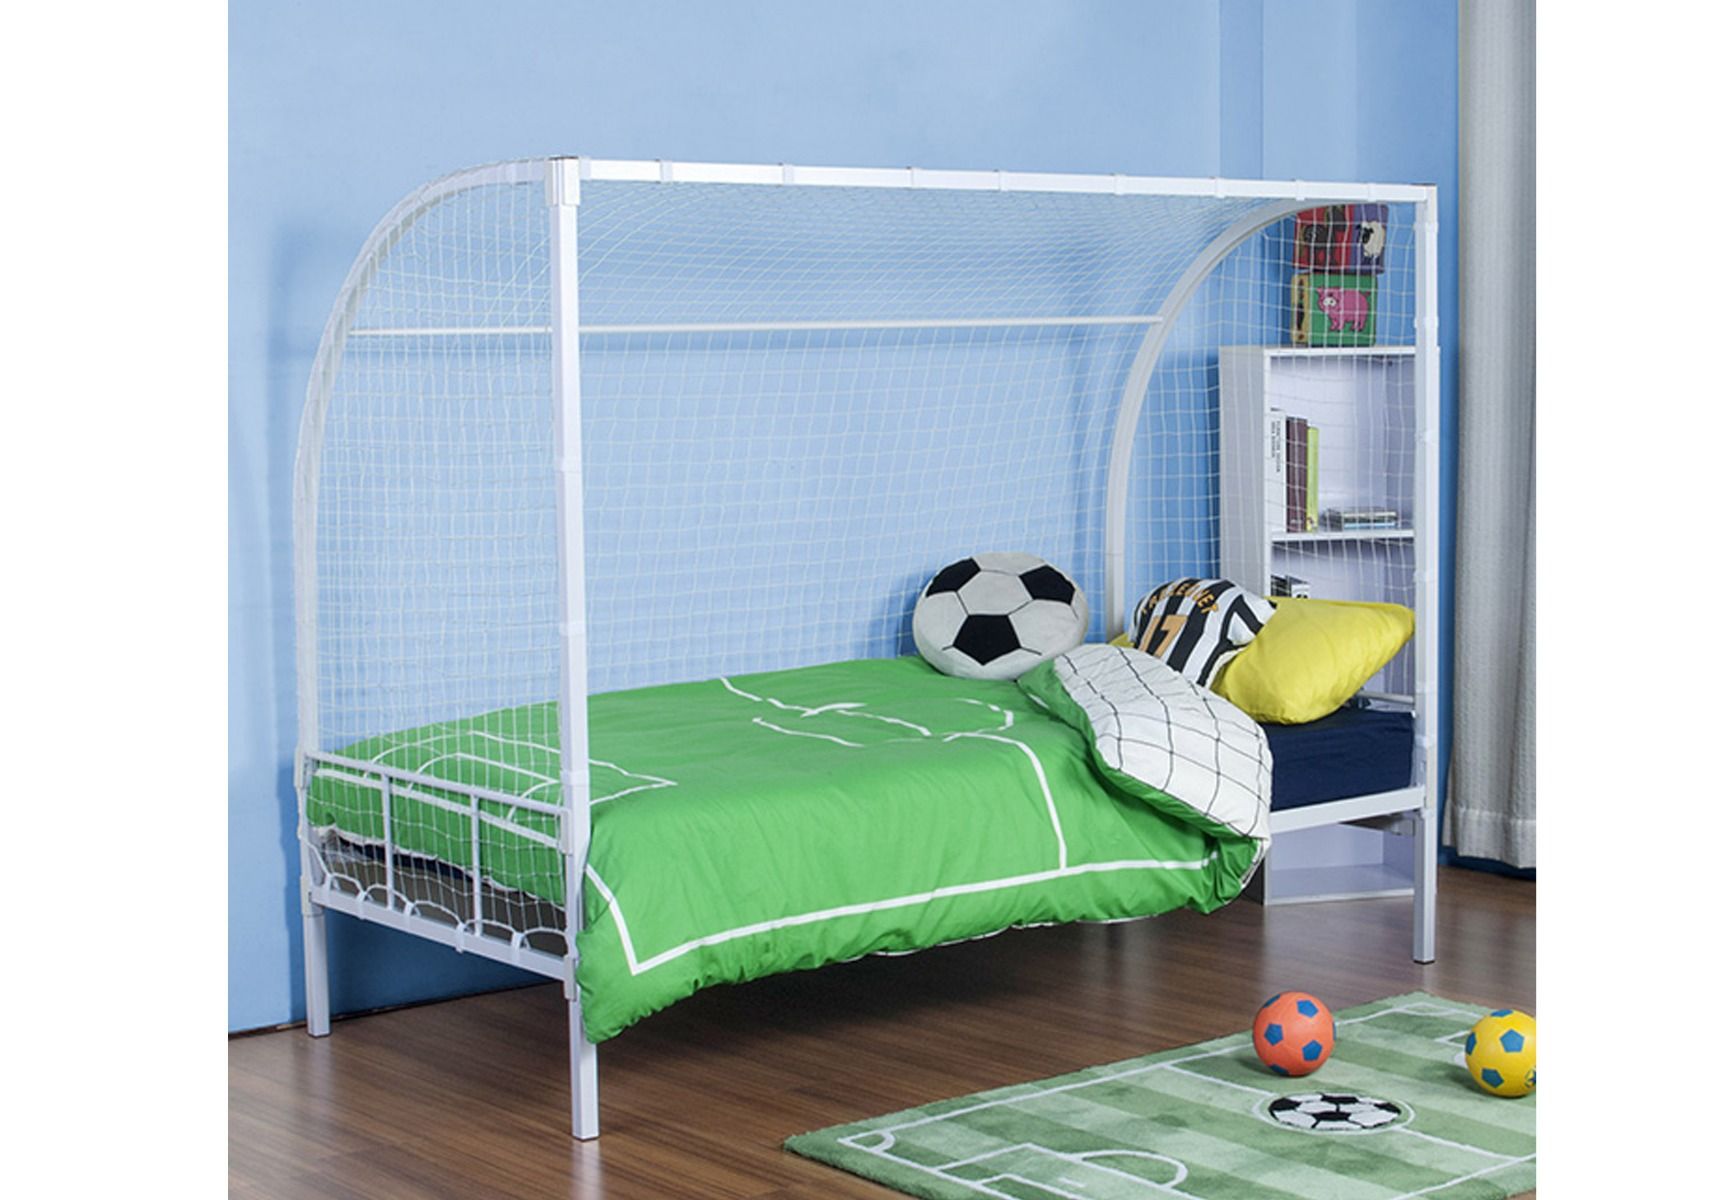 Metal Beds Ltd No Bolt Soccer Bed, Soccer Bunk Beds